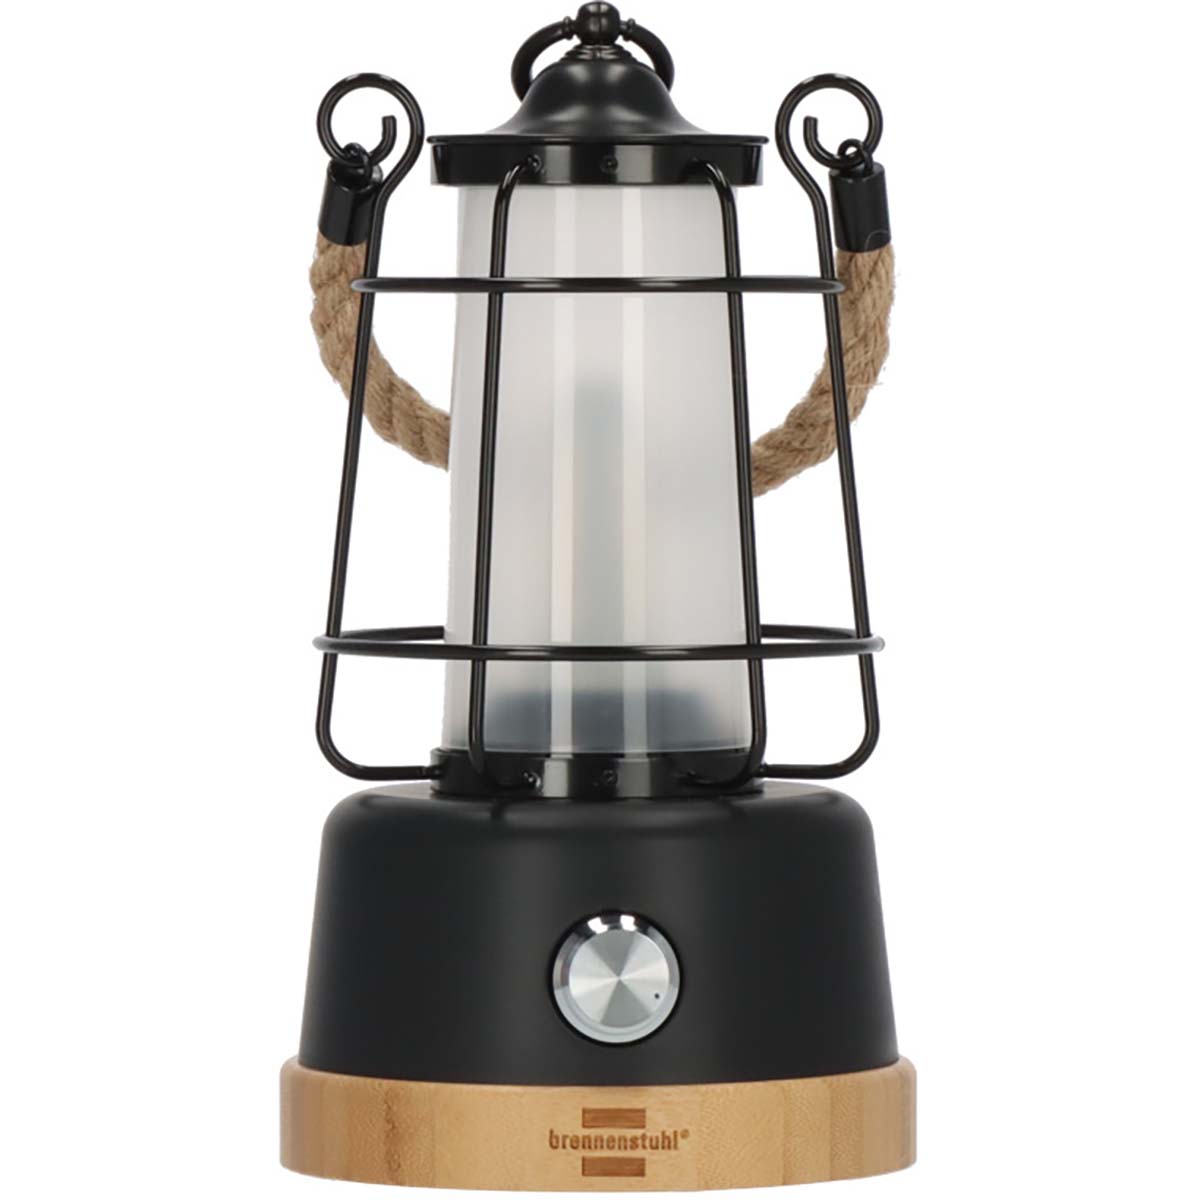 begaan uitsterven Zonnebrand Oplaadbare campinglamp CAL 1 met henneptouw en bamboevoet (370 lm, IP44,  brandtijd tot 75h, dimbaar, instelbare